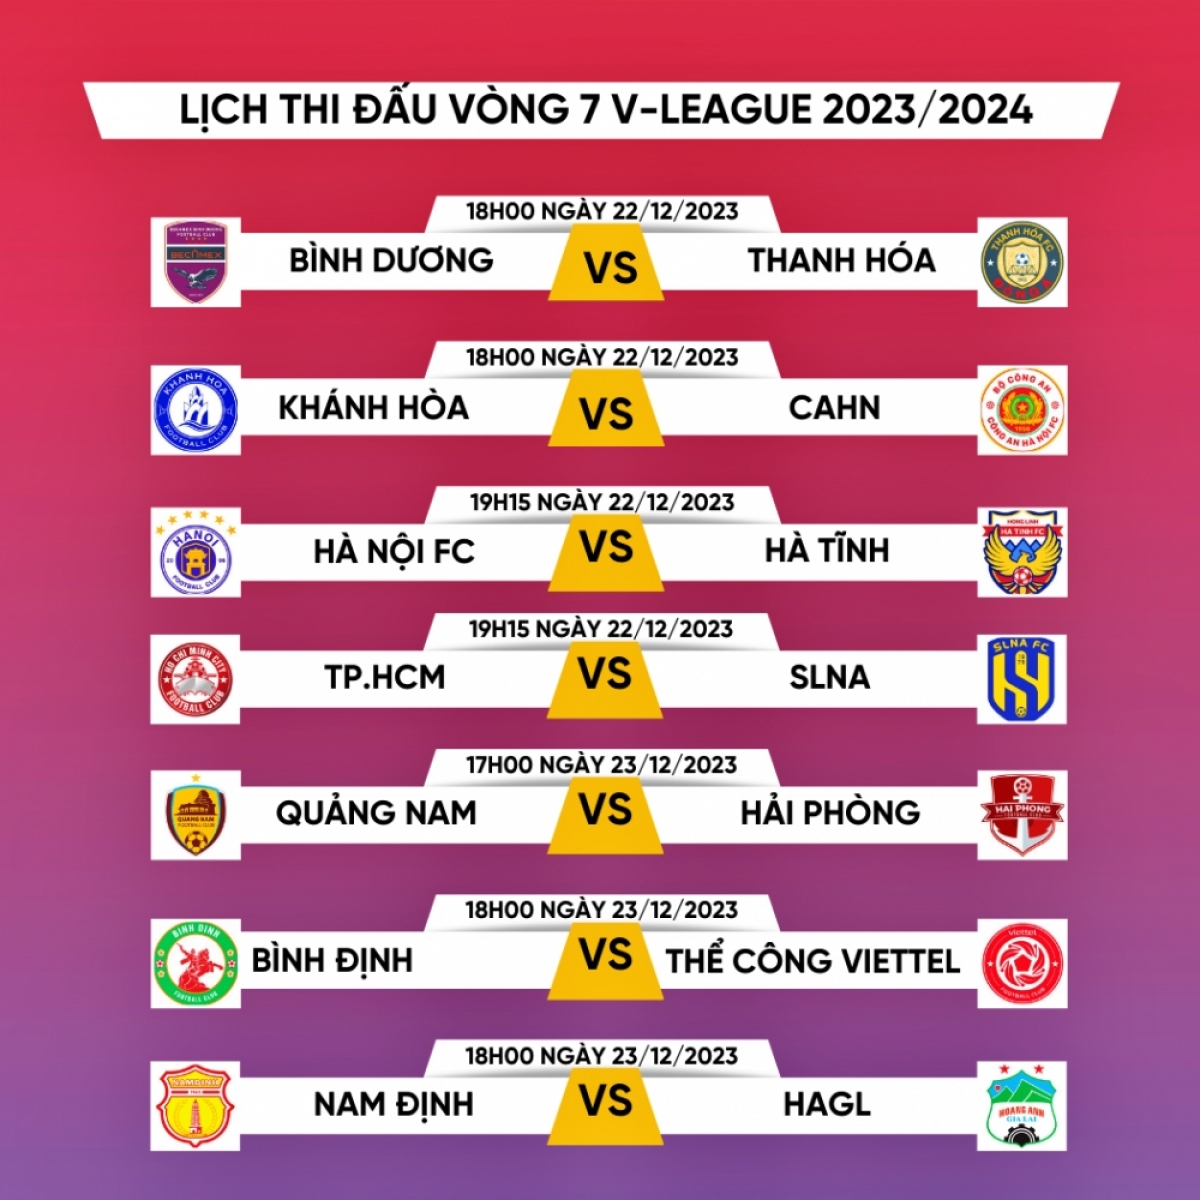 Bình Dương - Thanh Hóa là trận cầu tâm điểm của vòng 7, V.League 2023-2024